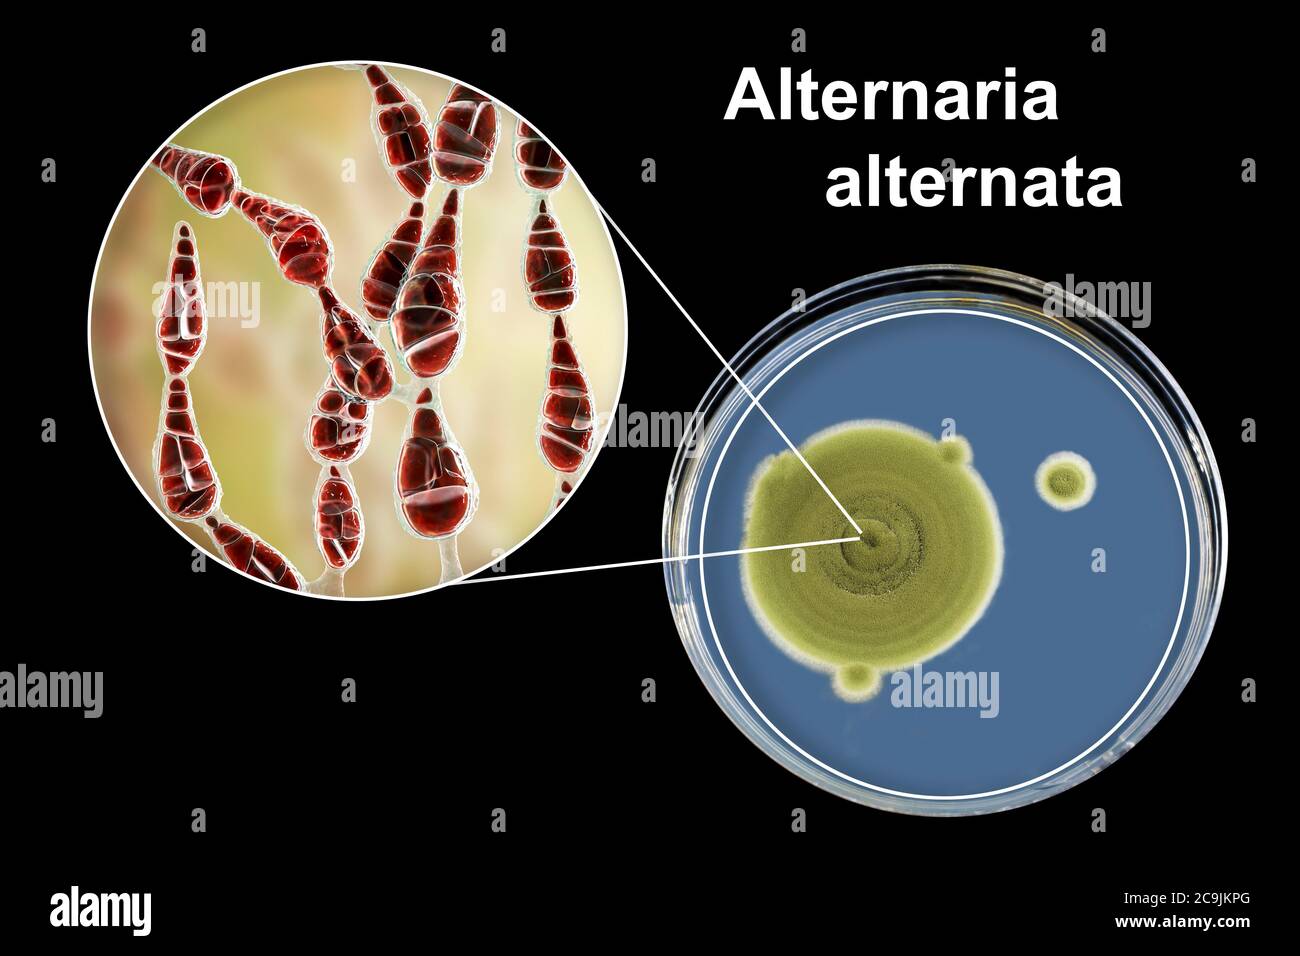 Filamentöser allergischer Pilz Alternaria alternata, Computerdarstellung der Pilzmorphologie und Aufnahme von Pilzkolonien auf Sabouraud Dextrose Stockfoto